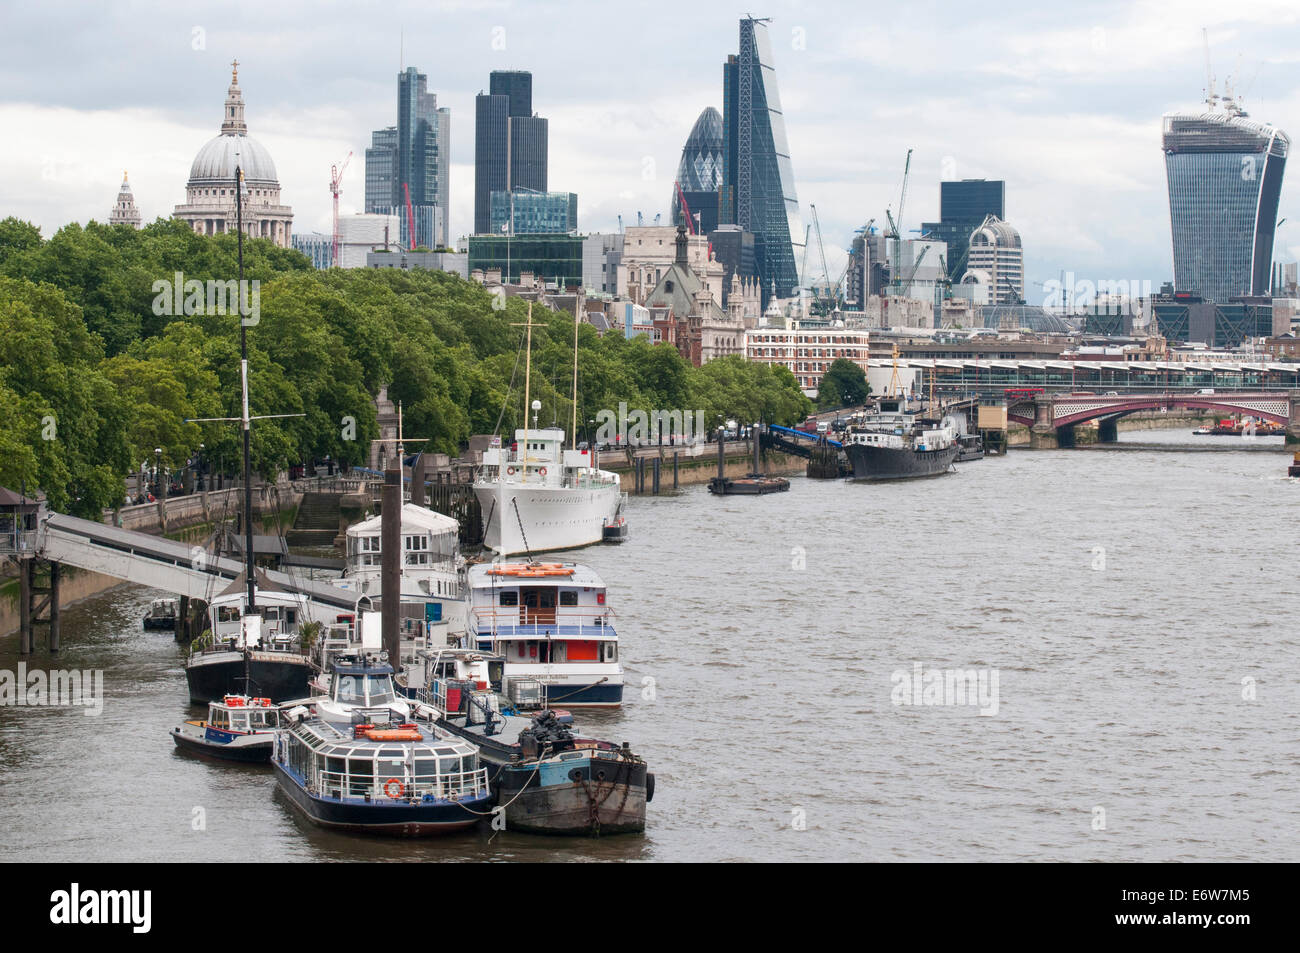 Blick nach Osten auf der Themse, London. Wahrzeichen am nördlichen Ufer sind das "Gherkin" Gebäude und St. Pauls Cathedral. Stockfoto